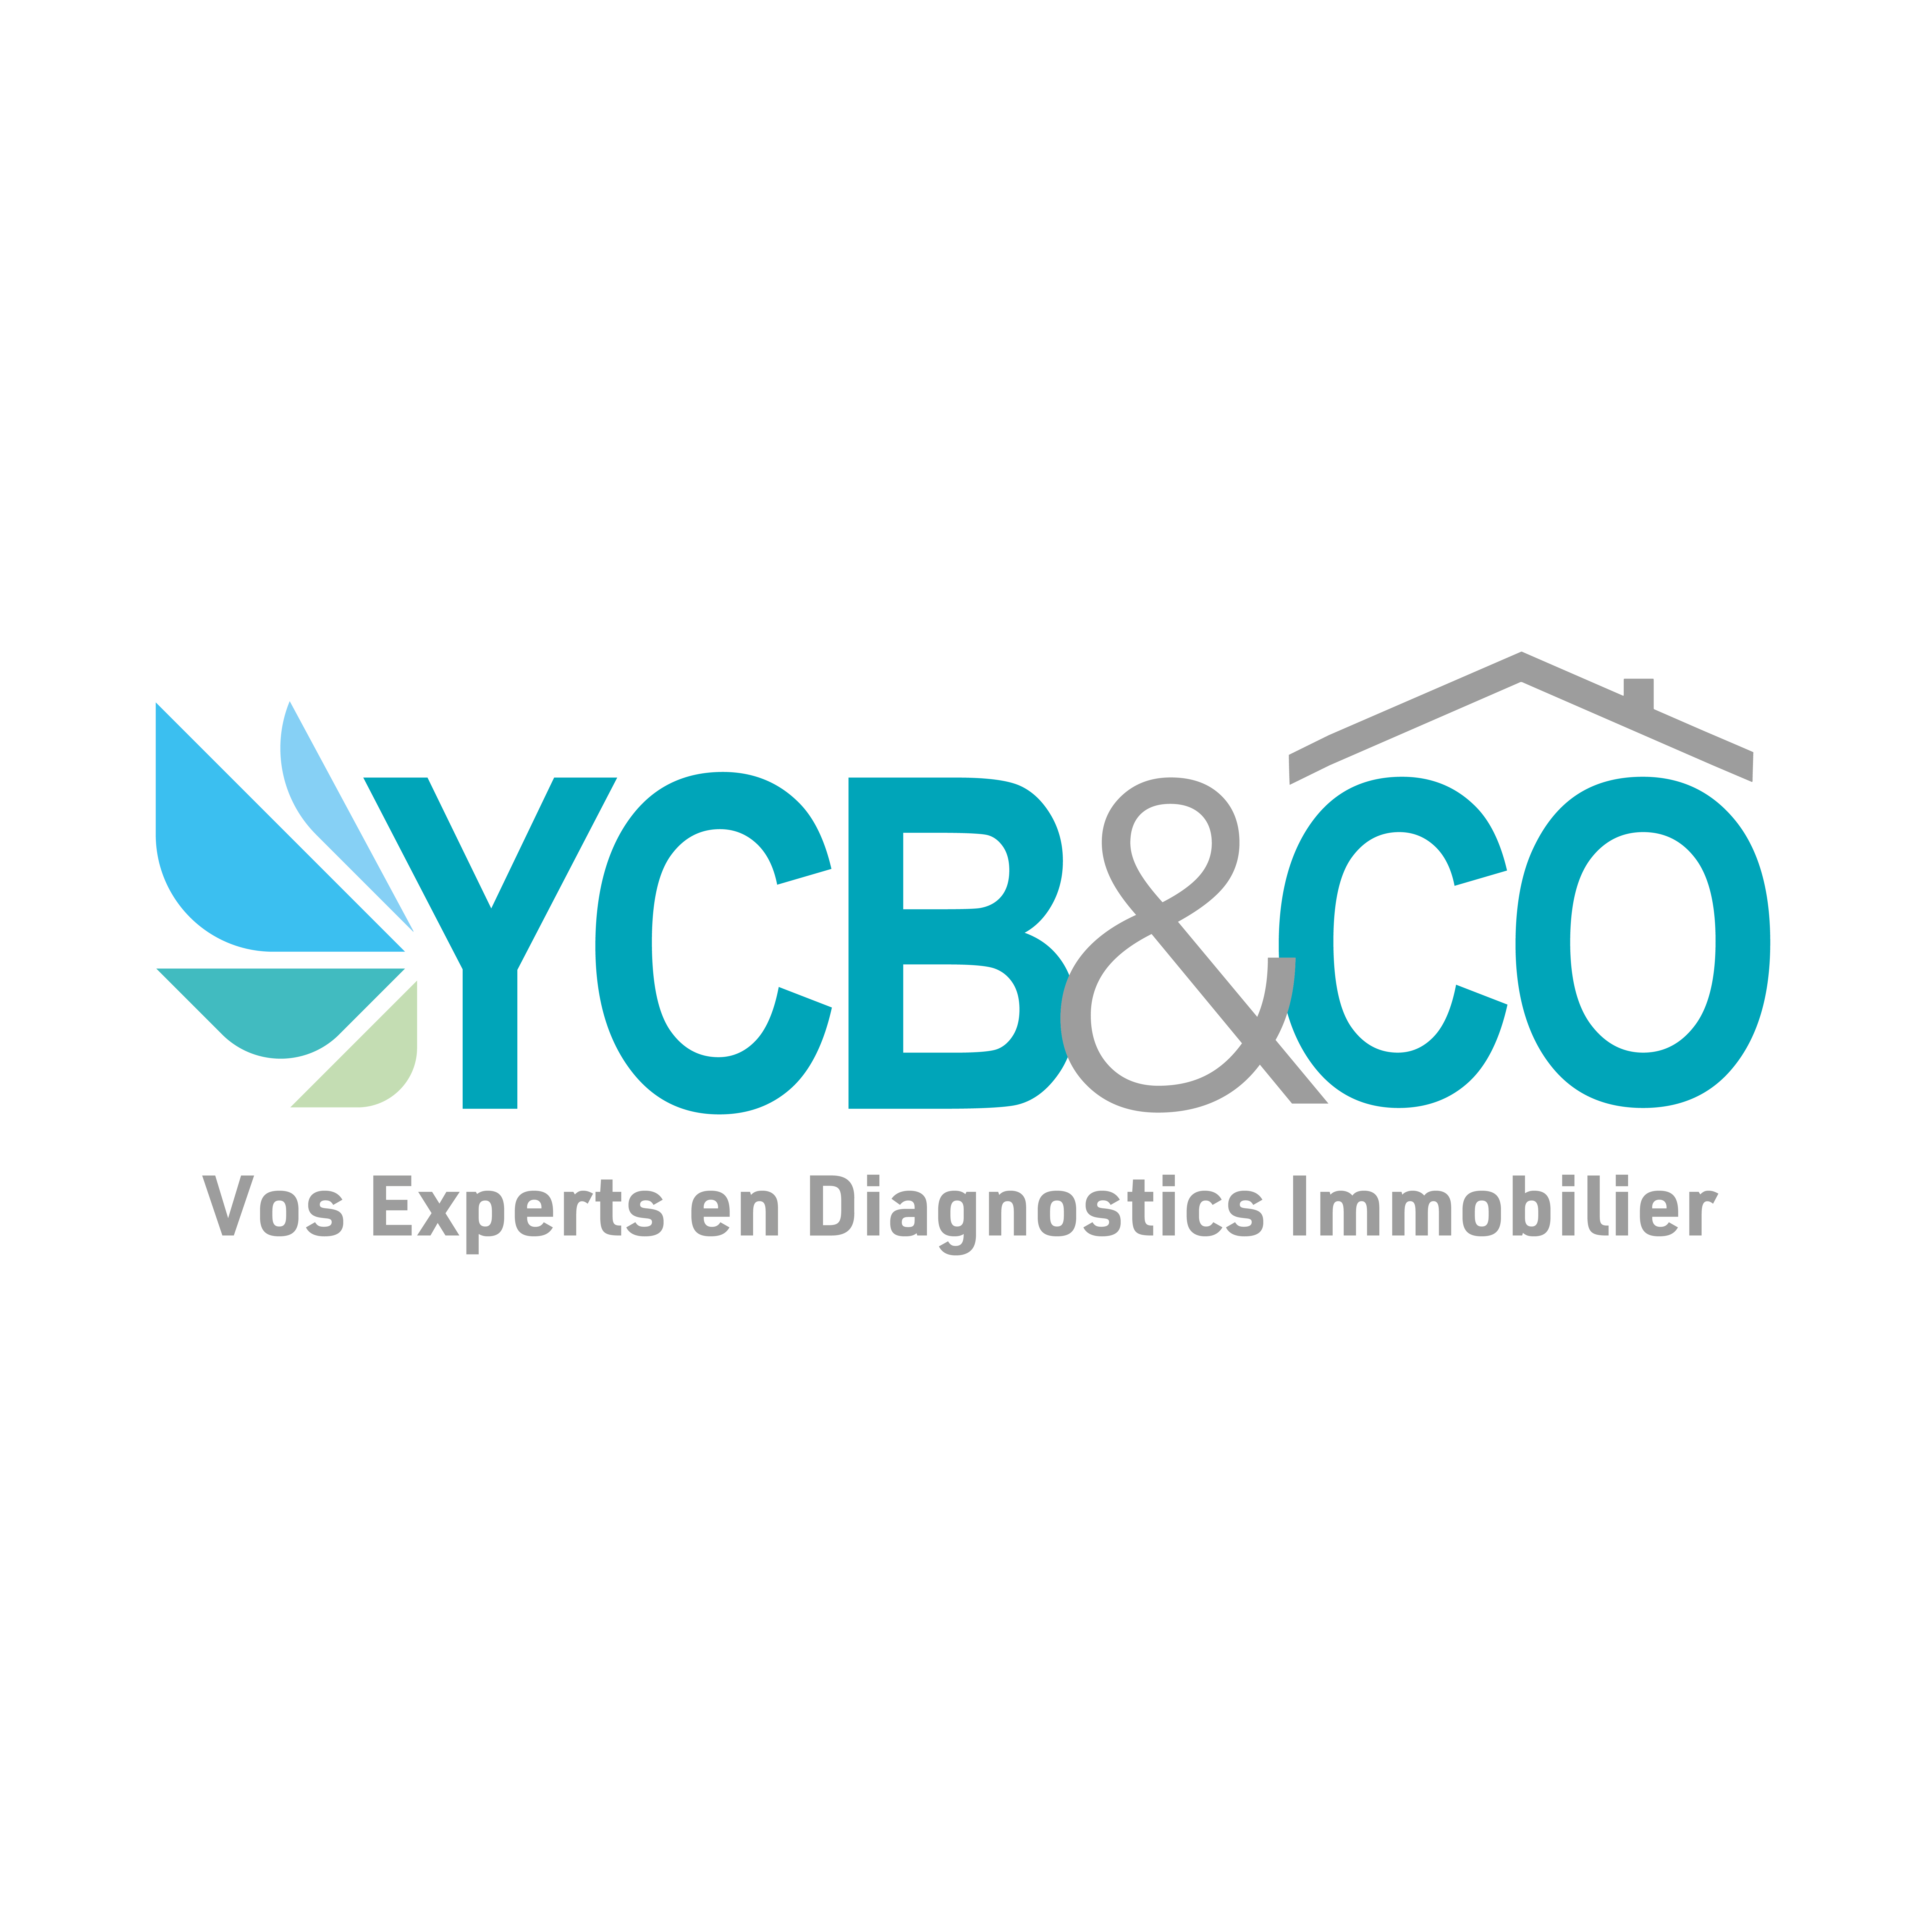 YCB&CO - Informations relatives à bilan énergétique à Neuilly-sur-Seine